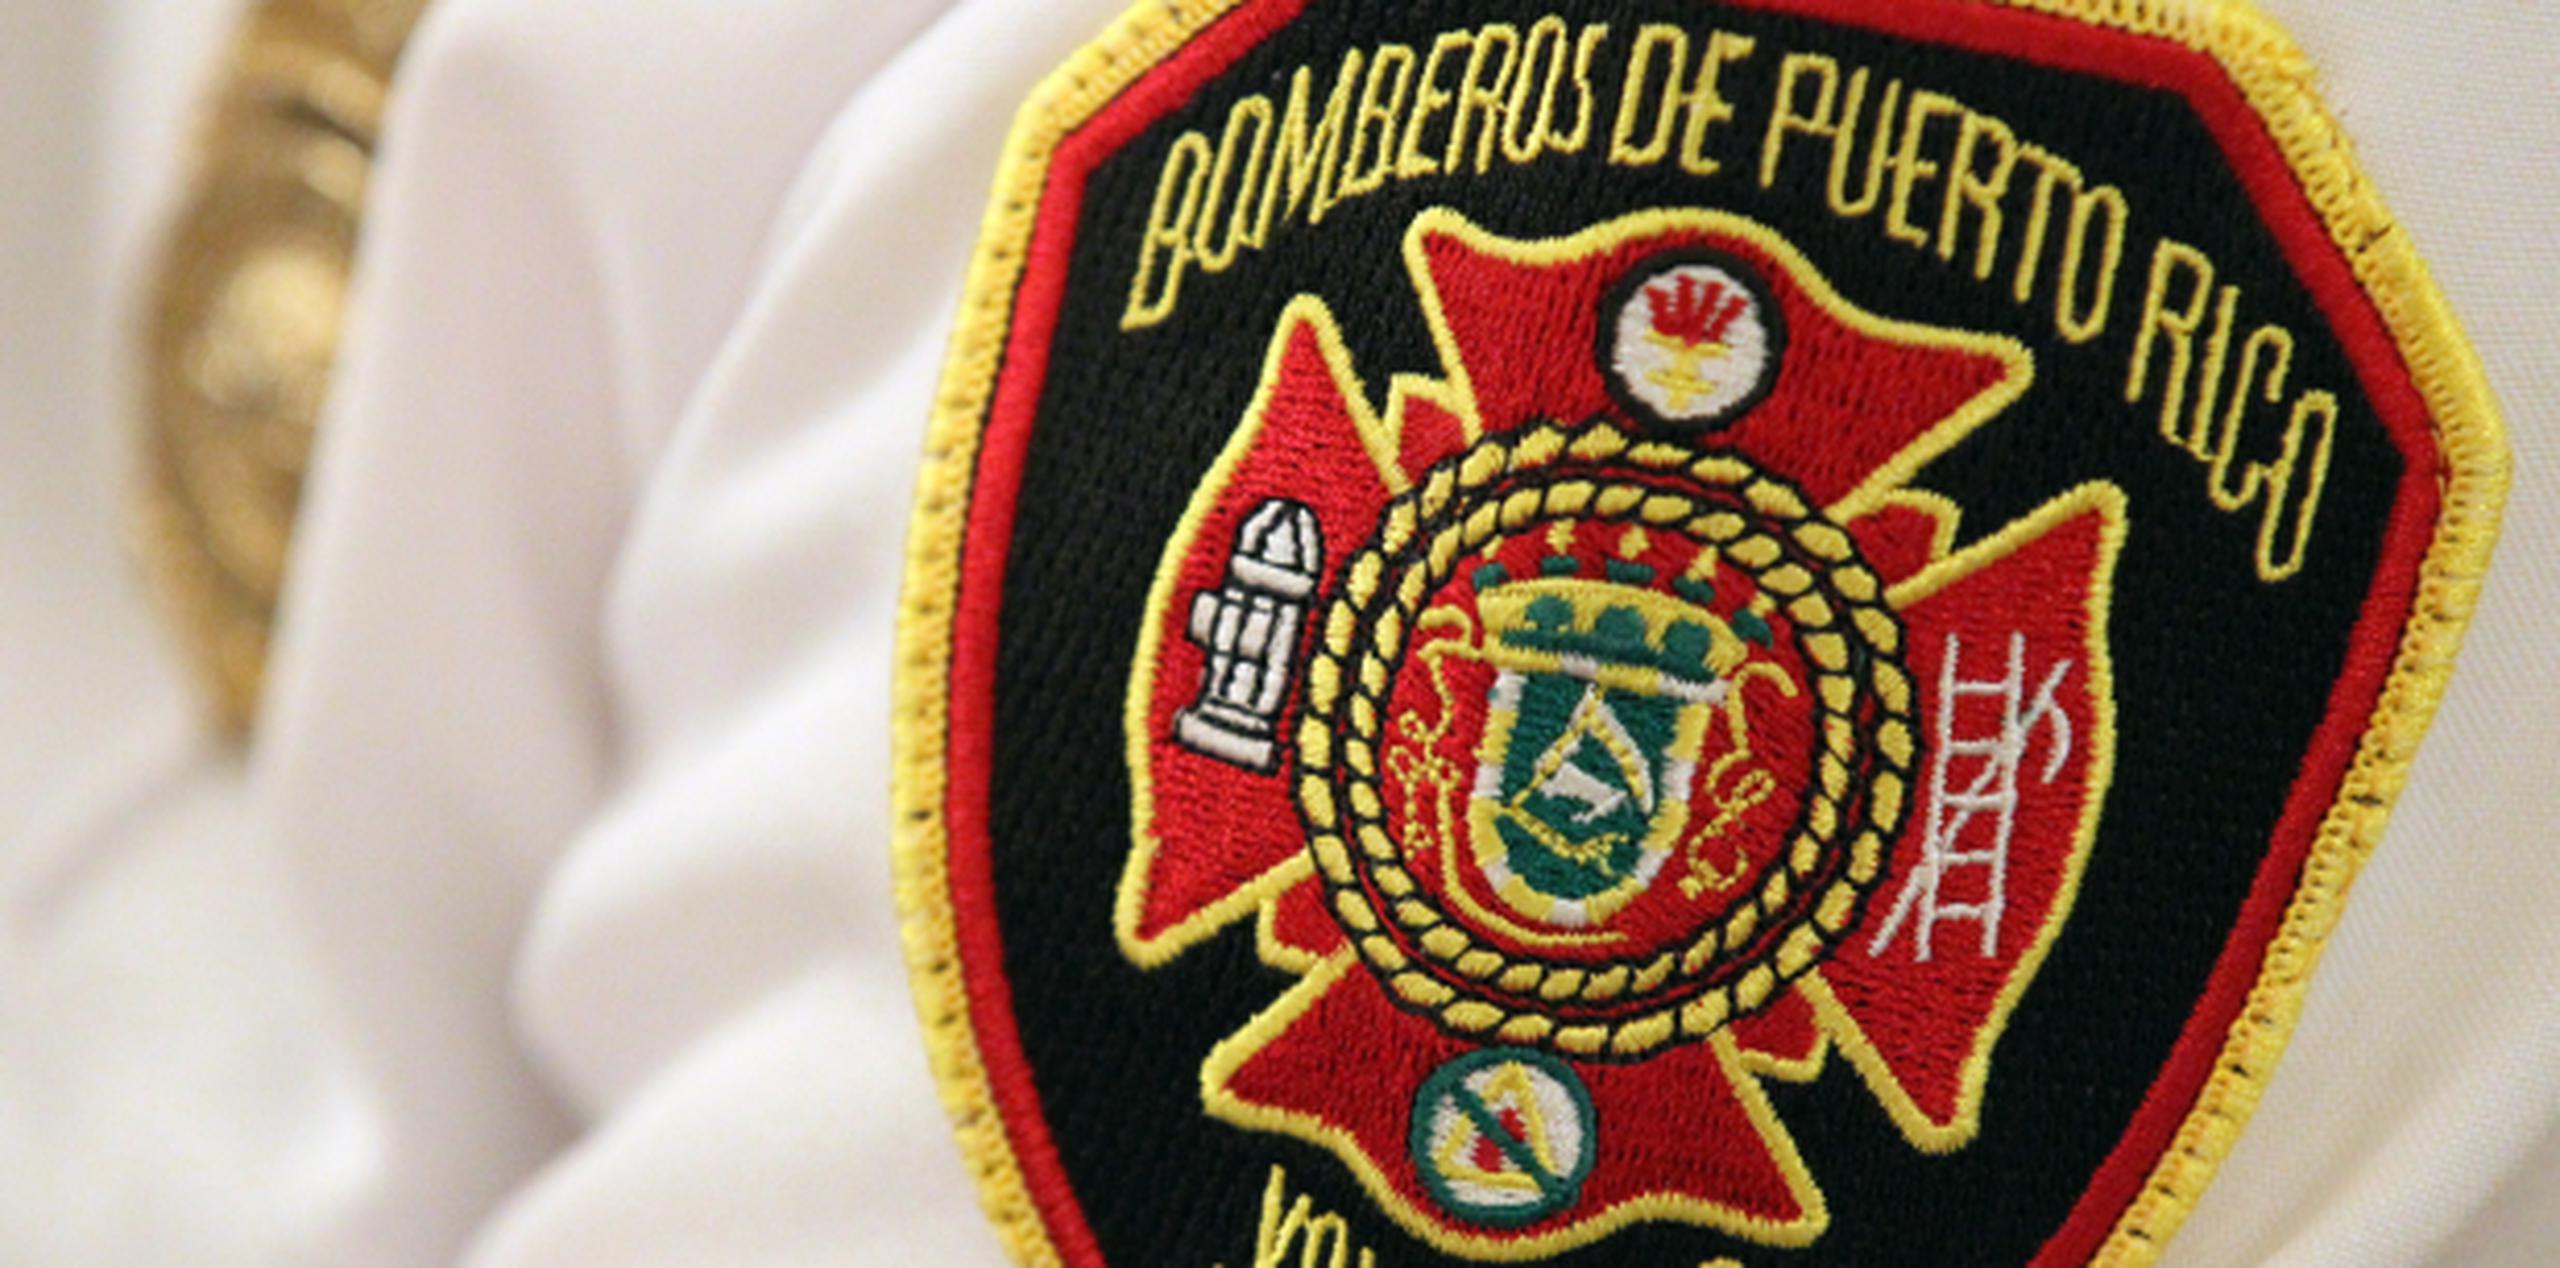 Personal de Manejo de Emergencias y del Cuerpo de Bomberos participaron en el rescate. (Archivo)